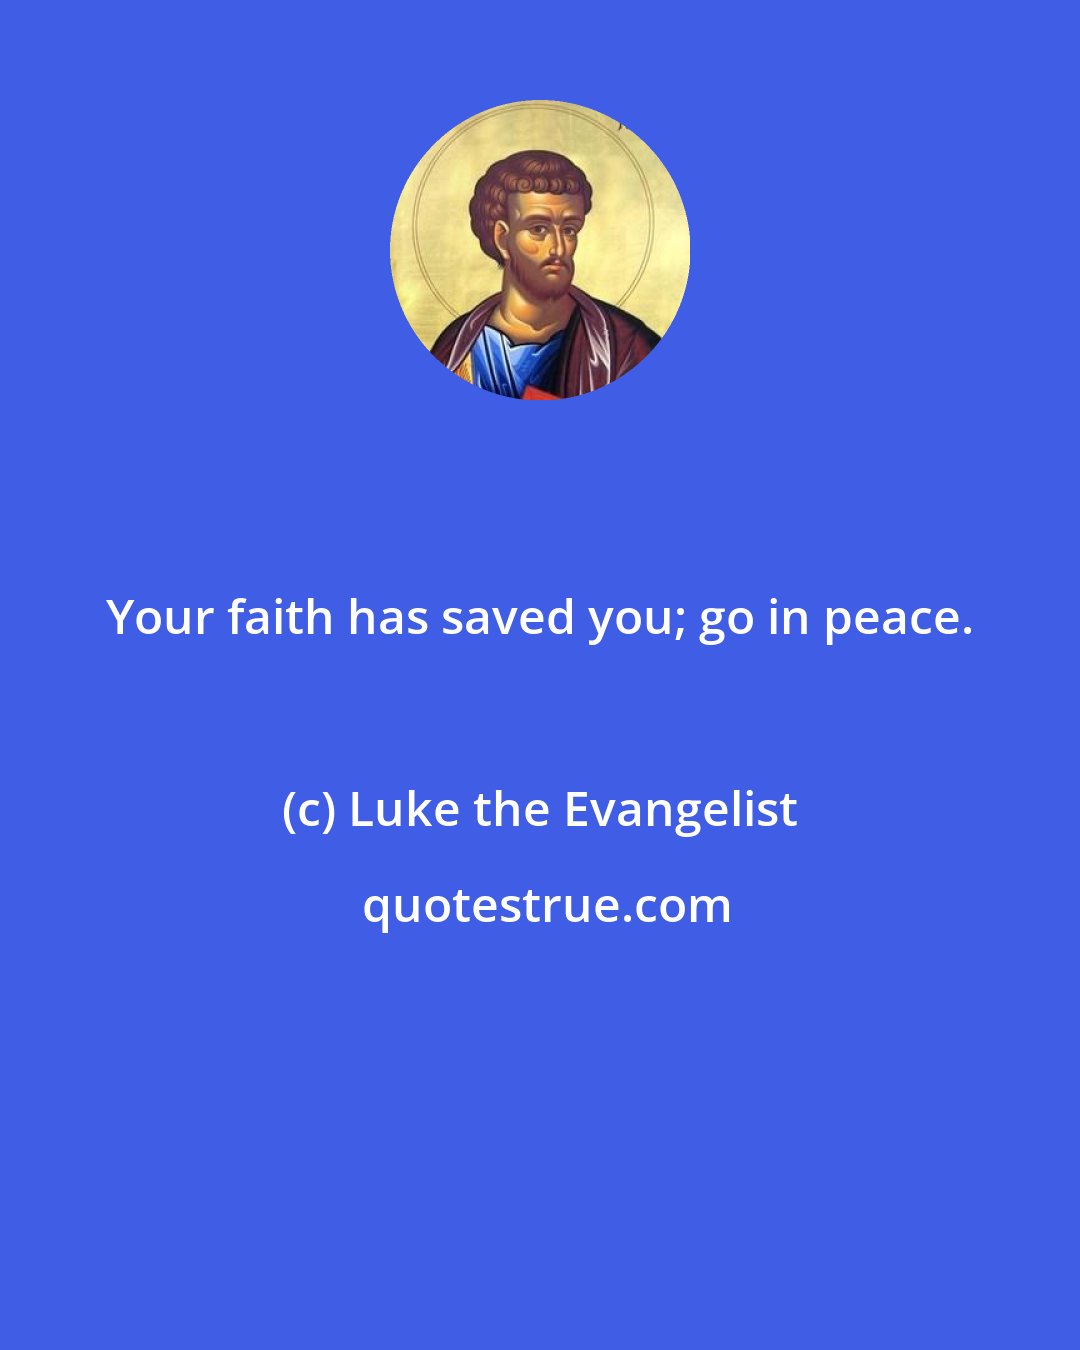 Luke the Evangelist: Your faith has saved you; go in peace.